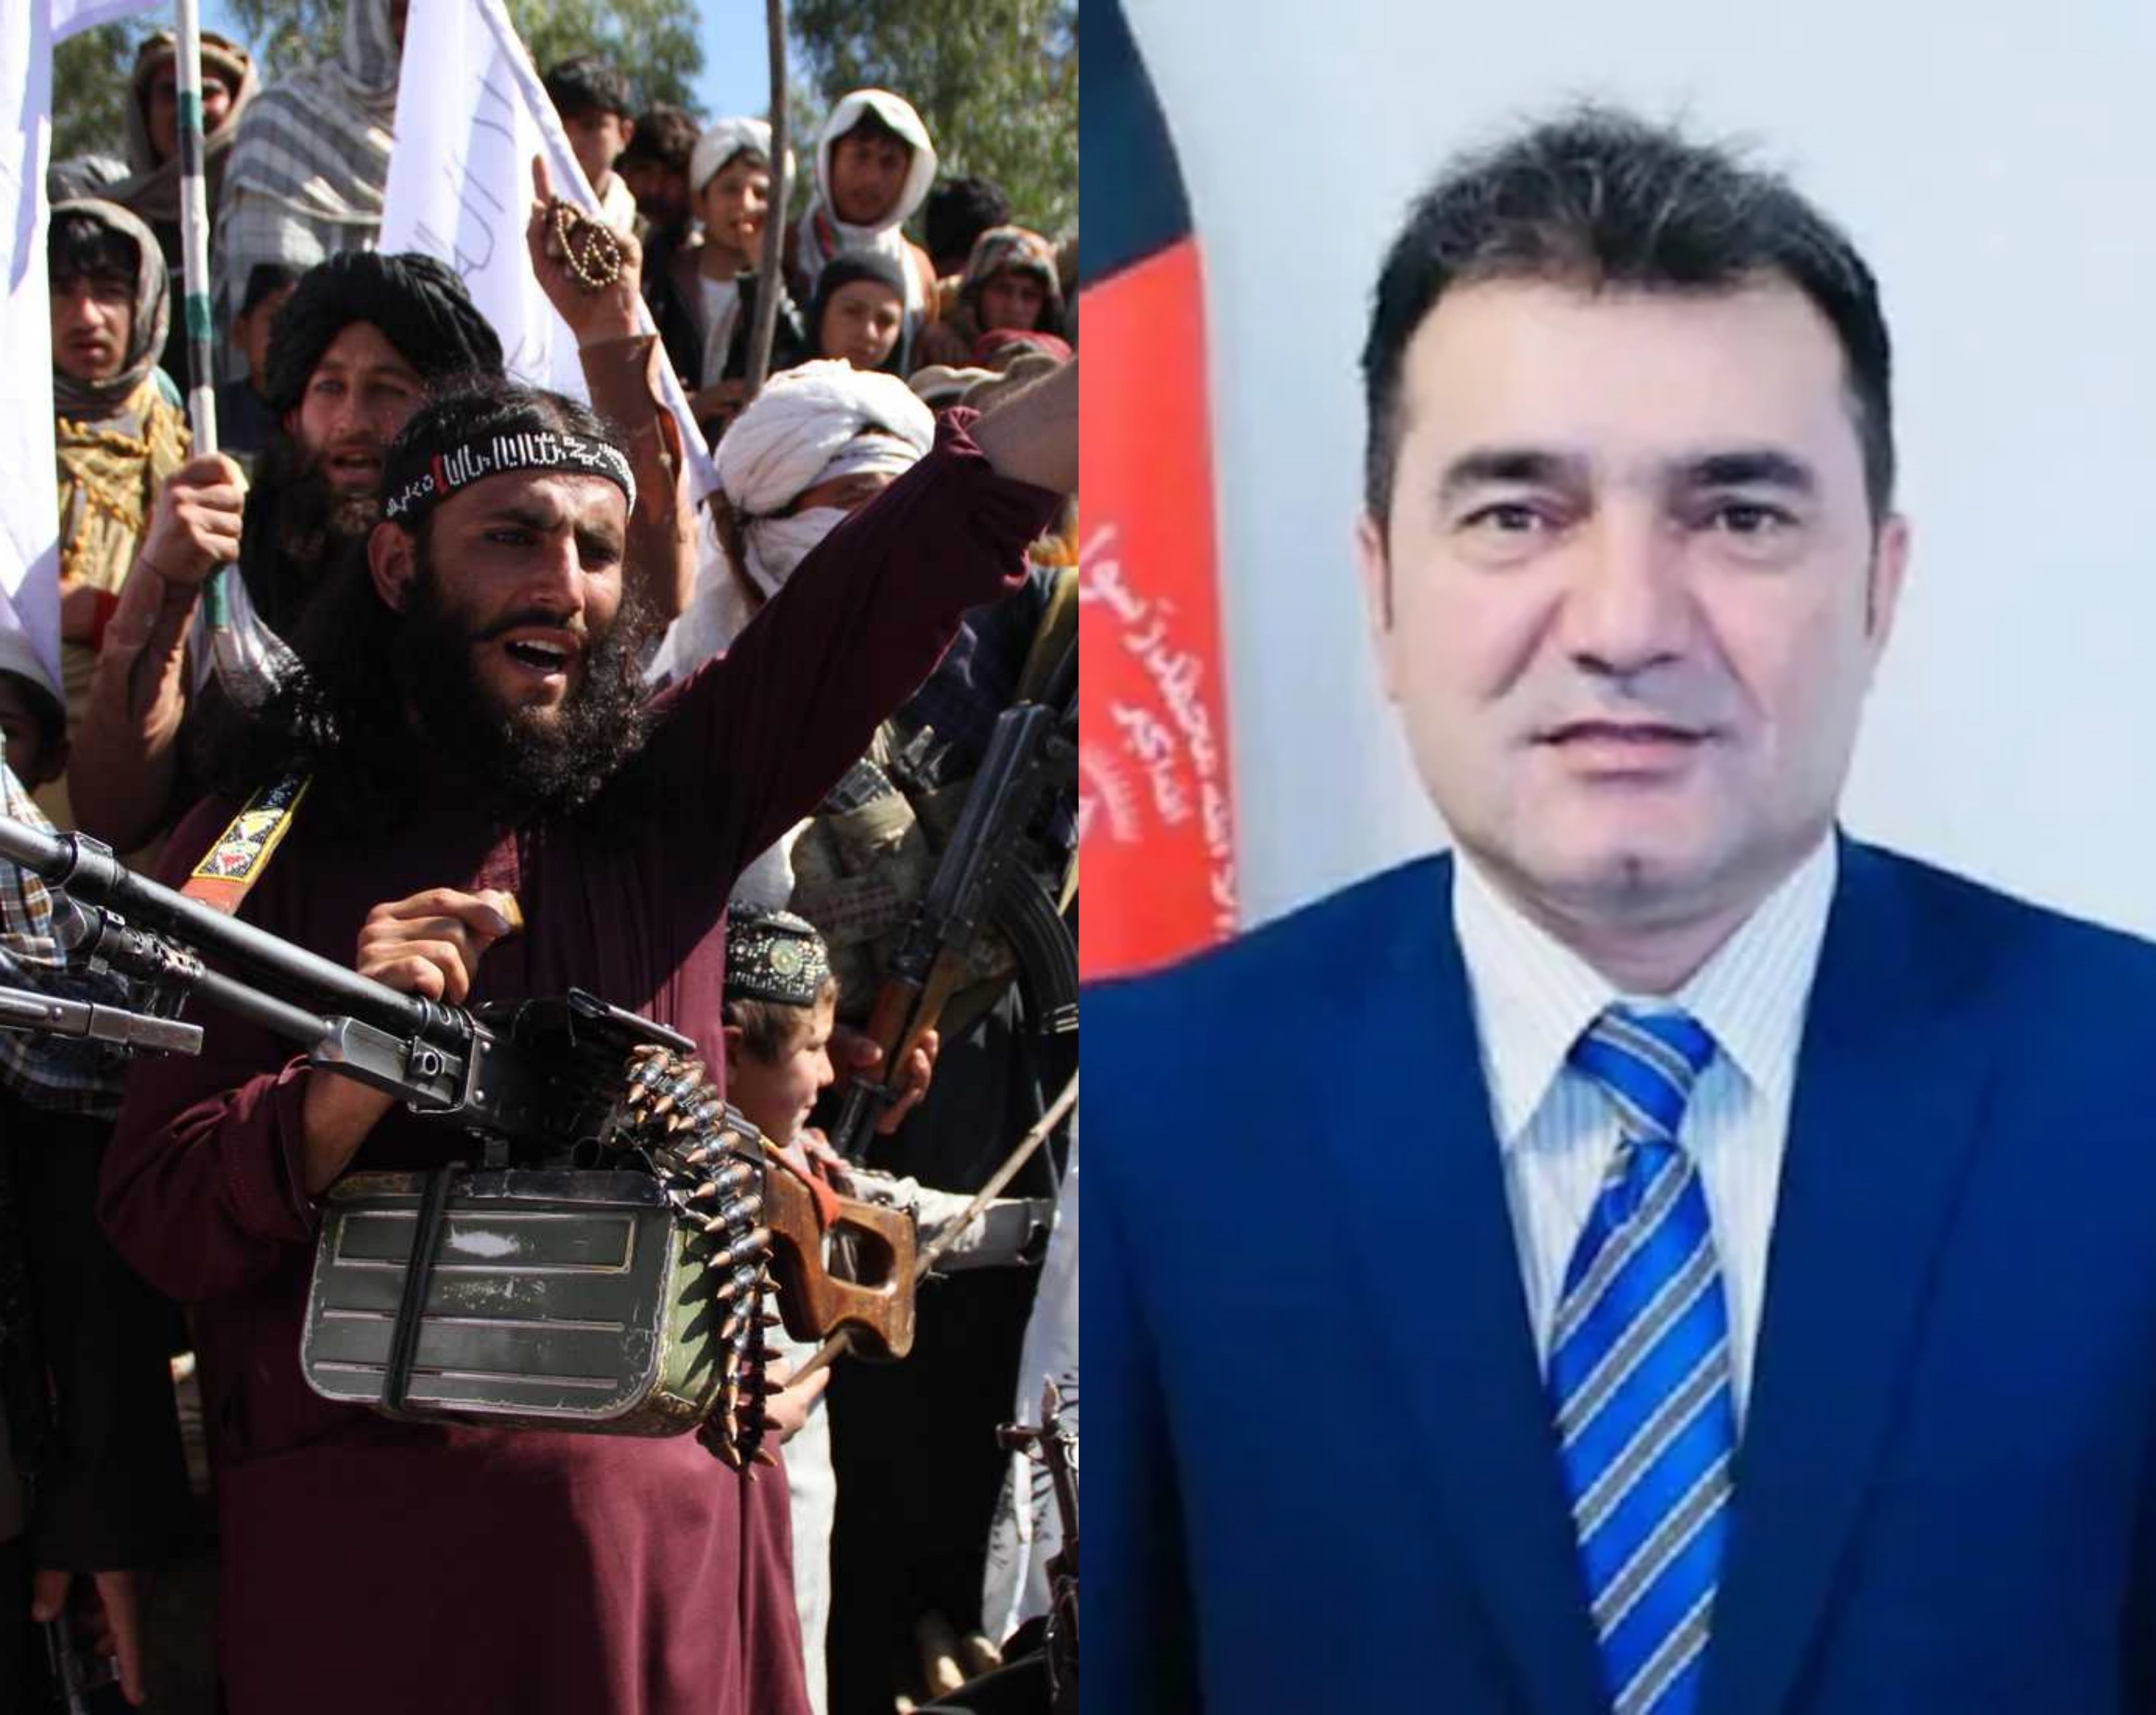 Աֆղանստանի մեդիա և տեղեկատվական կենտրոնի տնօրենը սպանվել է